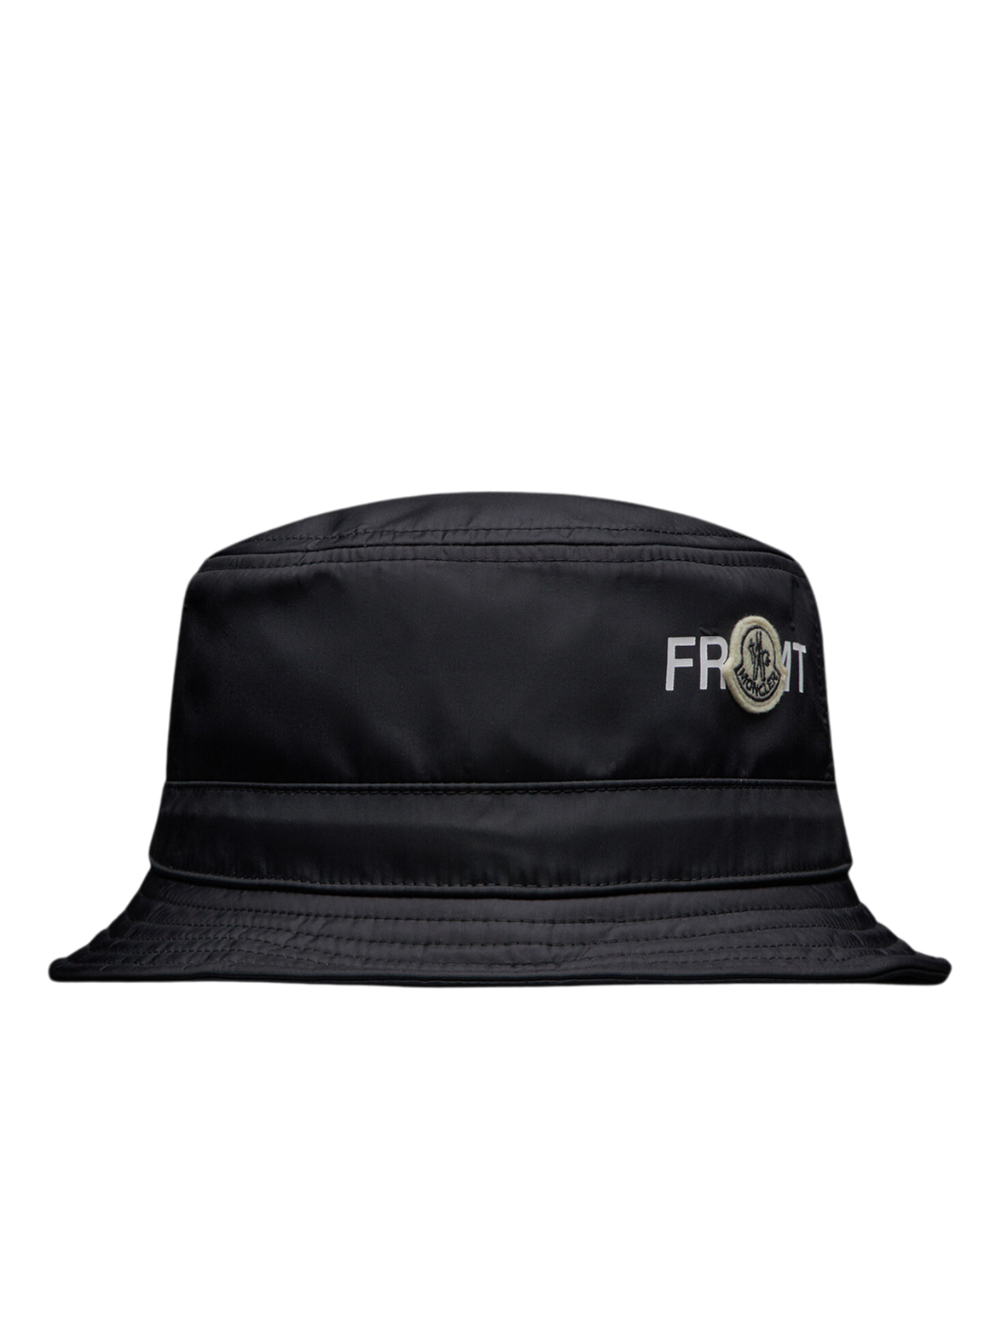 MONCLER GENIUS X 7 MONCLER FRGMT HIROSHI FUJIWARA Bucket Hat Black - MAISONDEFASHION.COM